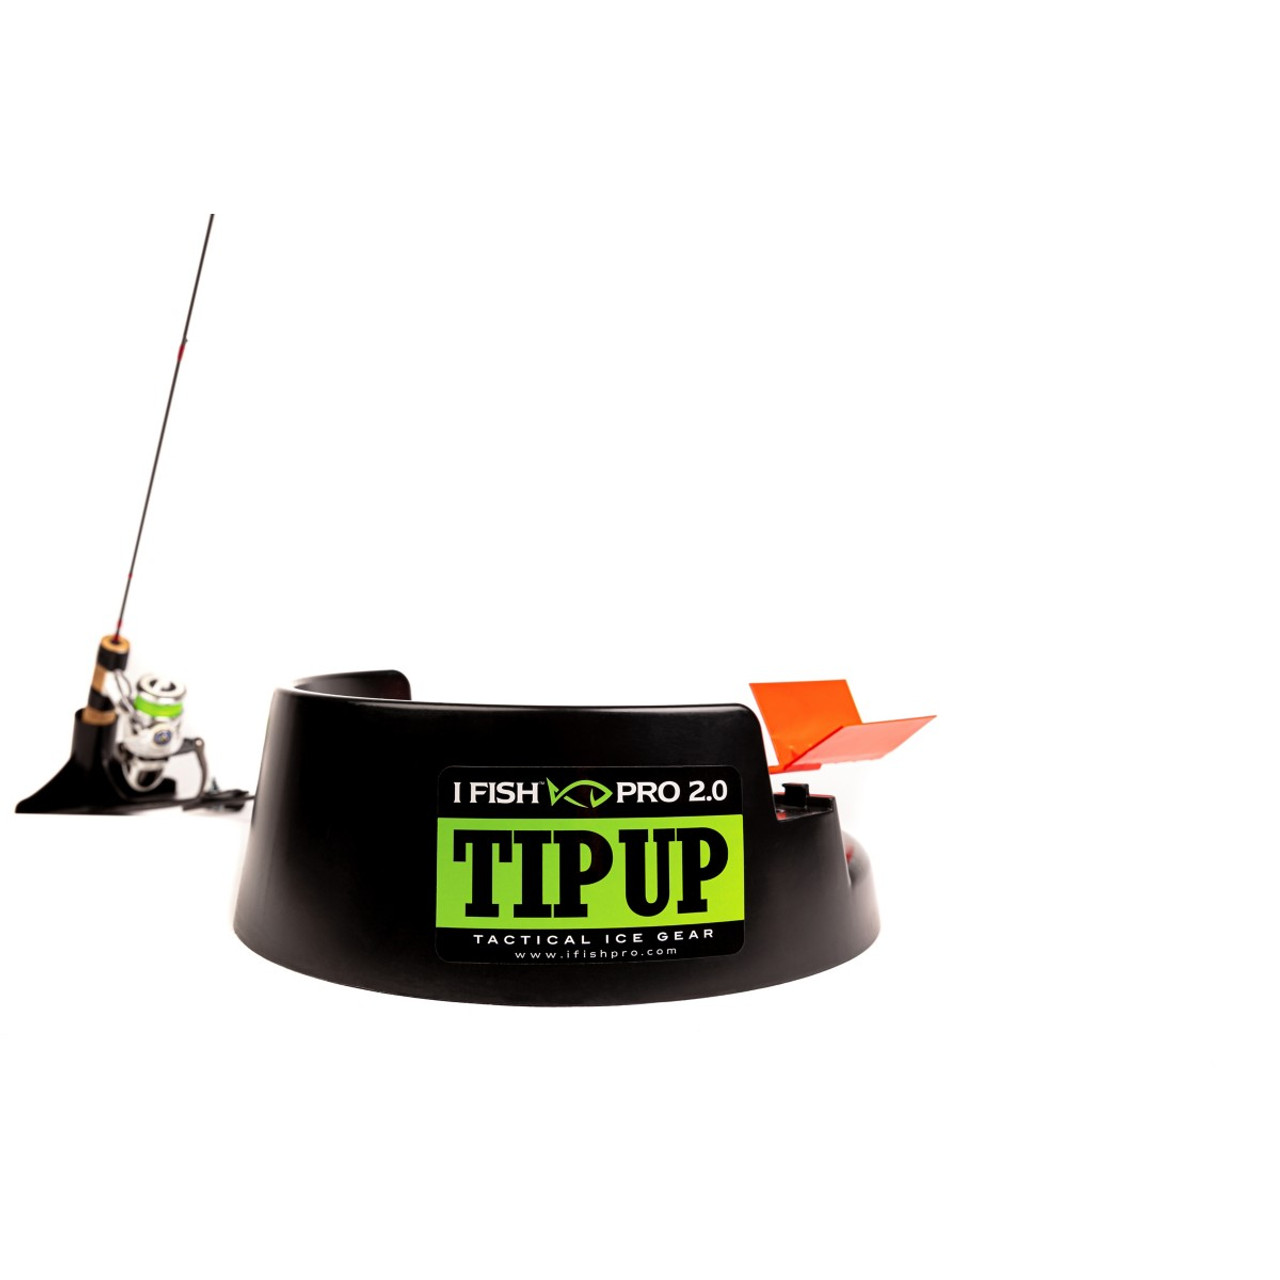 IFISH IFPTU1 Pro 2.0 Ice Fishing Tip Up